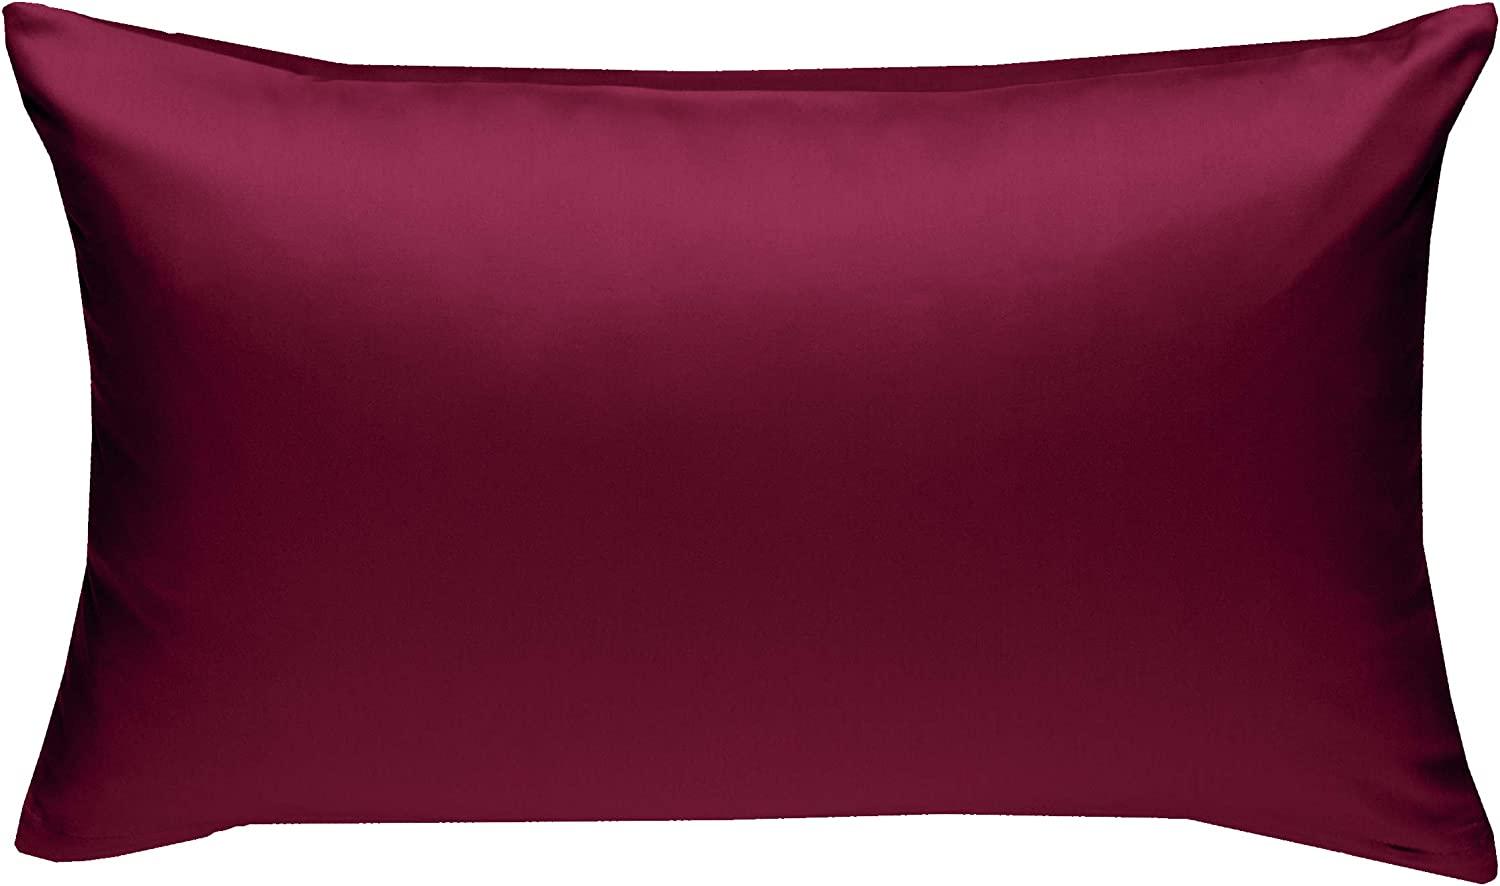 Bettwaesche-mit-Stil Mako-Satin / Baumwollsatin Bettwäsche uni / einfarbig pink Kissenbezug 40x60 cm Bild 1